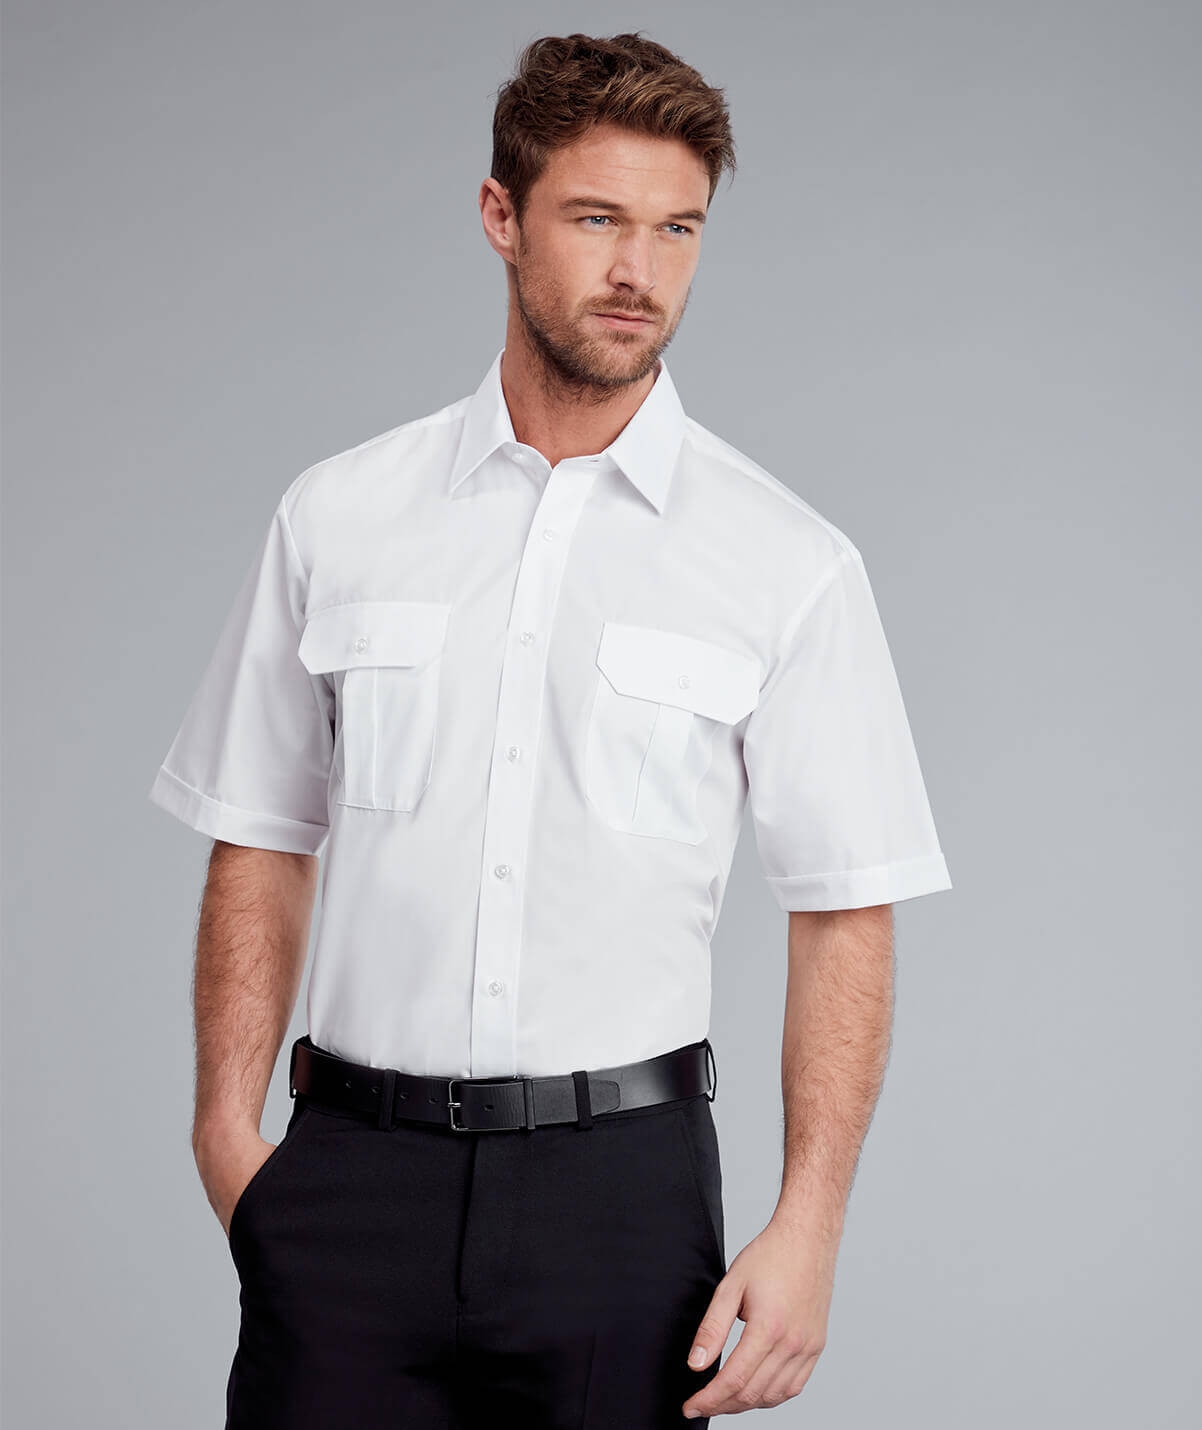 Disley Bush Mens Short Sleeve Shirt -0